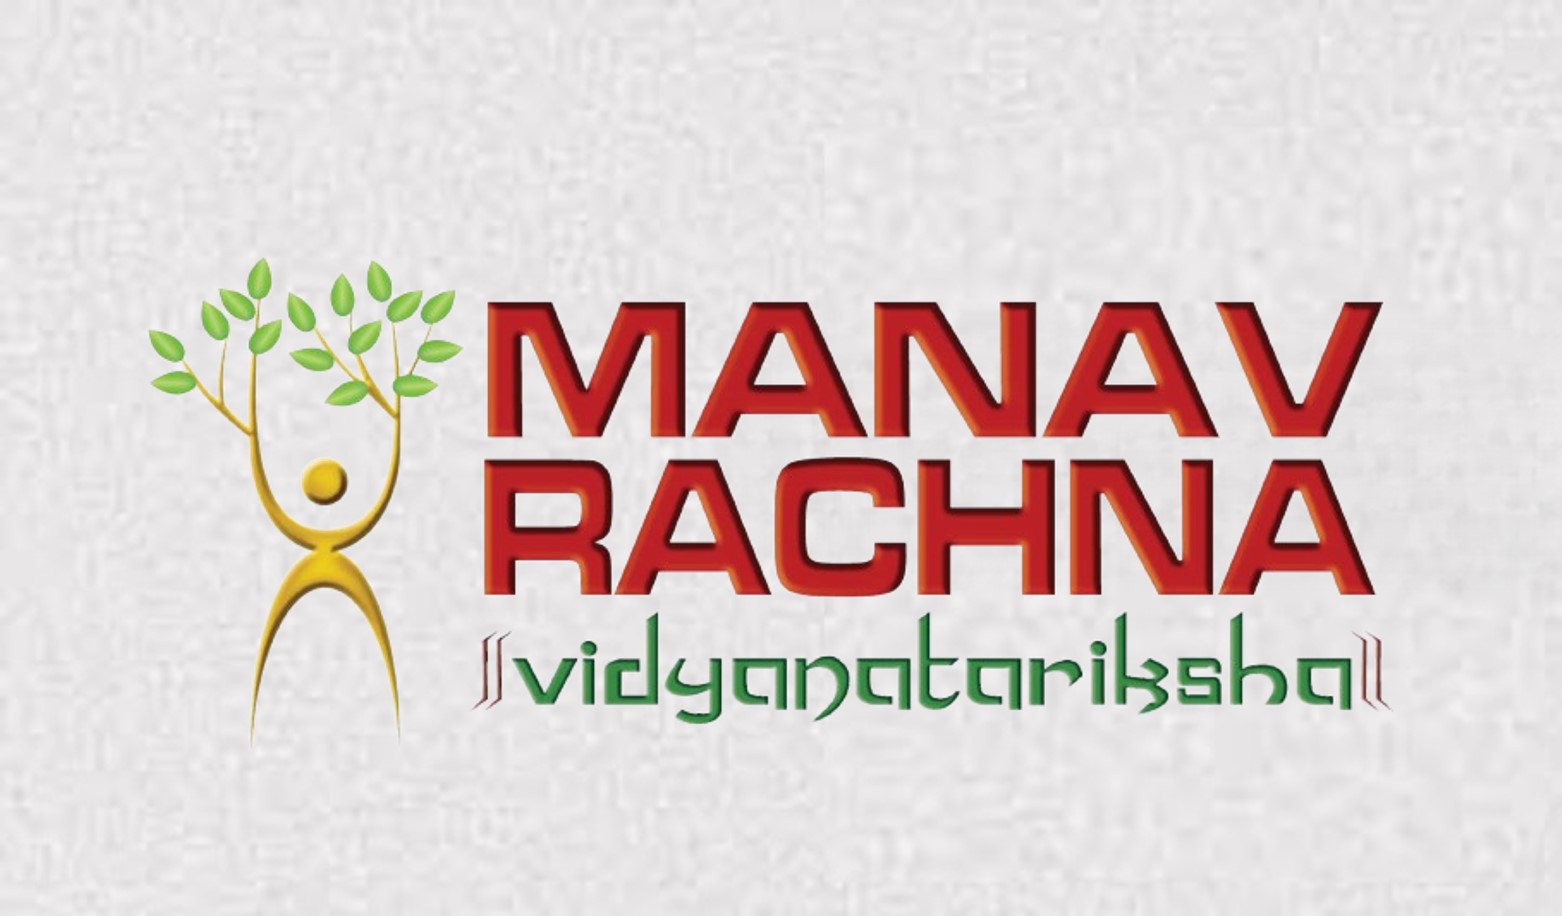 Manav Rachana Customize Priting